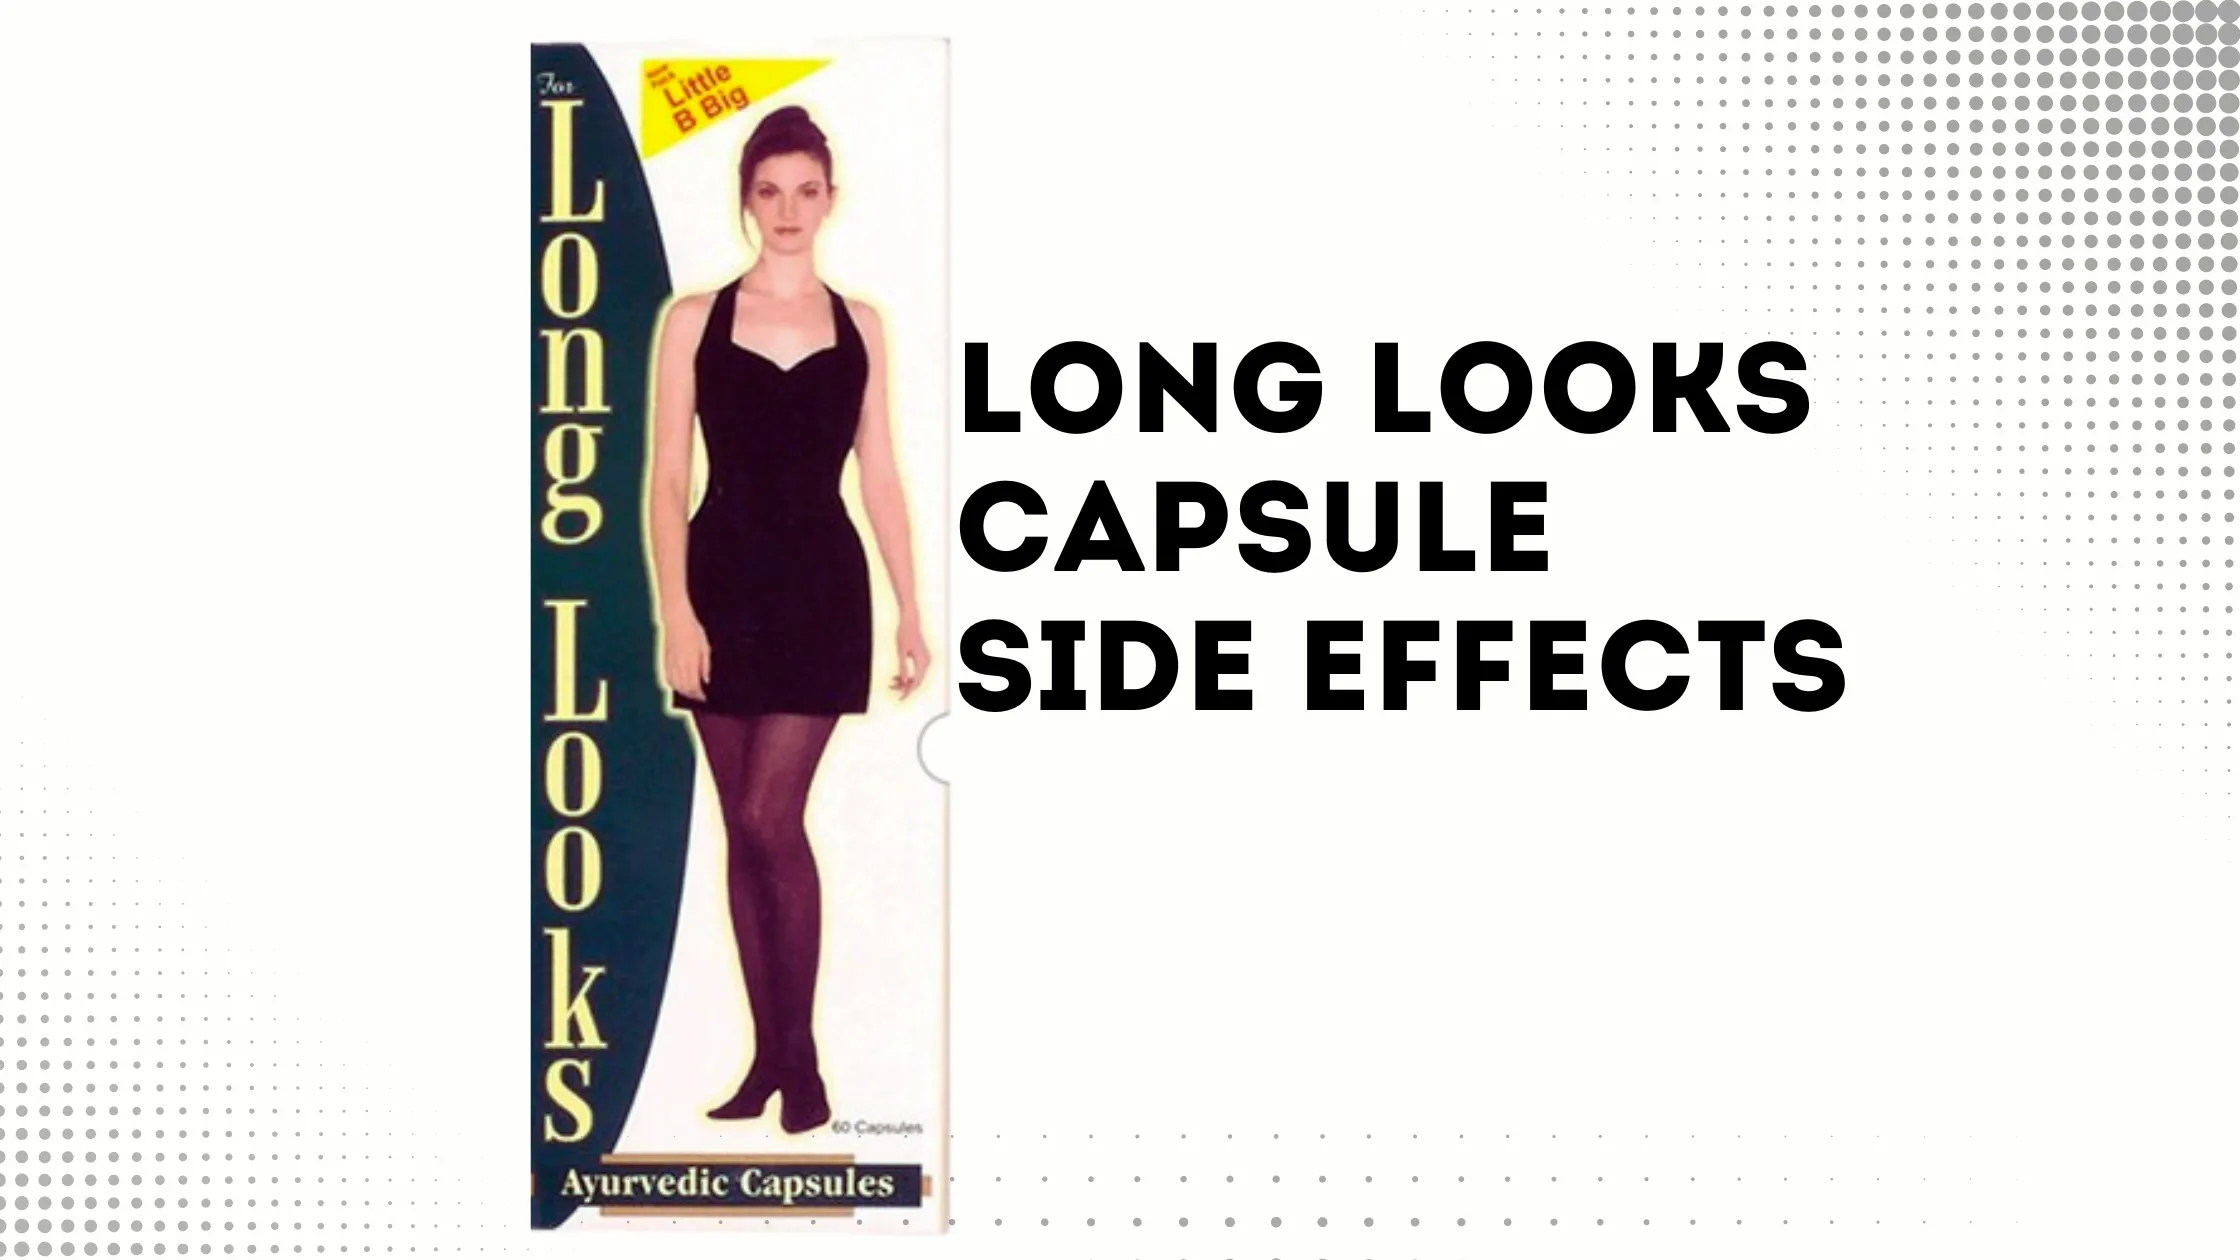 Long Looks Capsule Side Effects